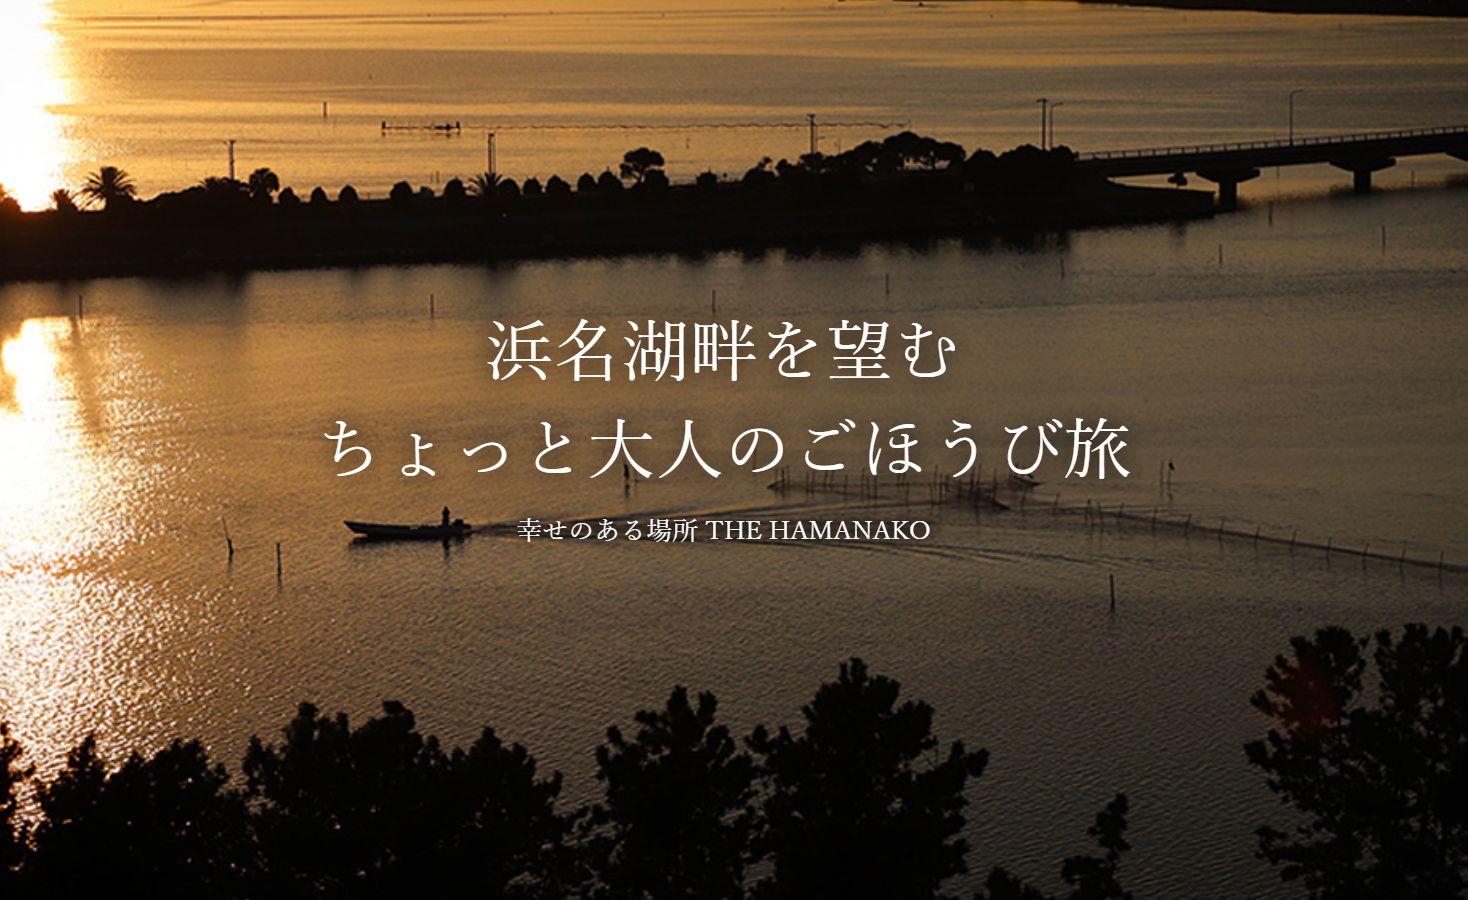 THE HAMANAKO